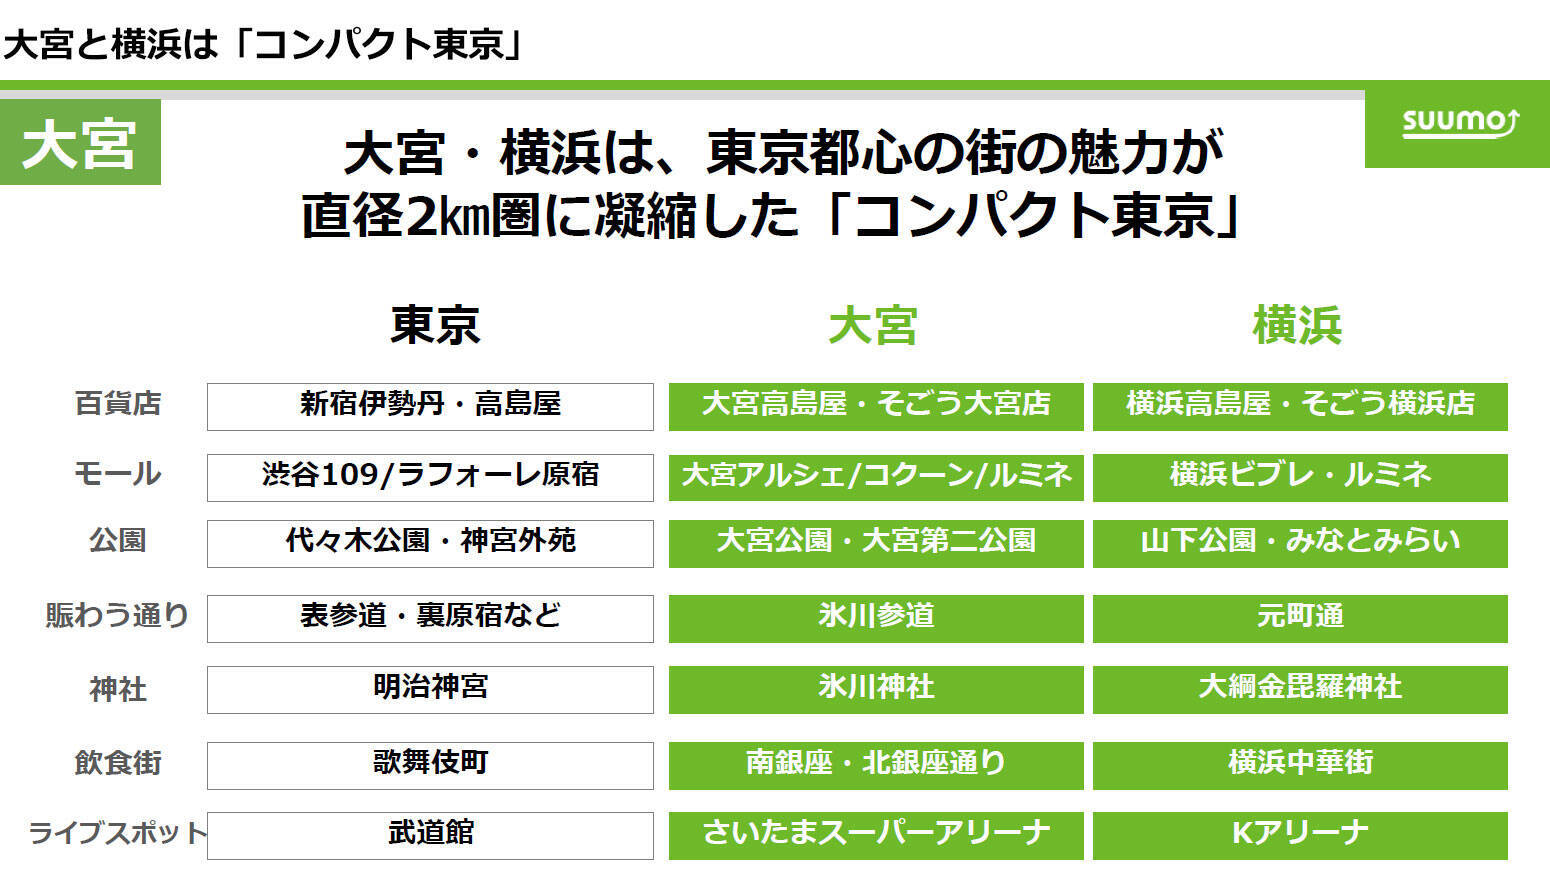 「住みたい街ランキング」2024、東京勢弱体!? 1位、2位は東京外、吉祥寺はまさかの3位に退く